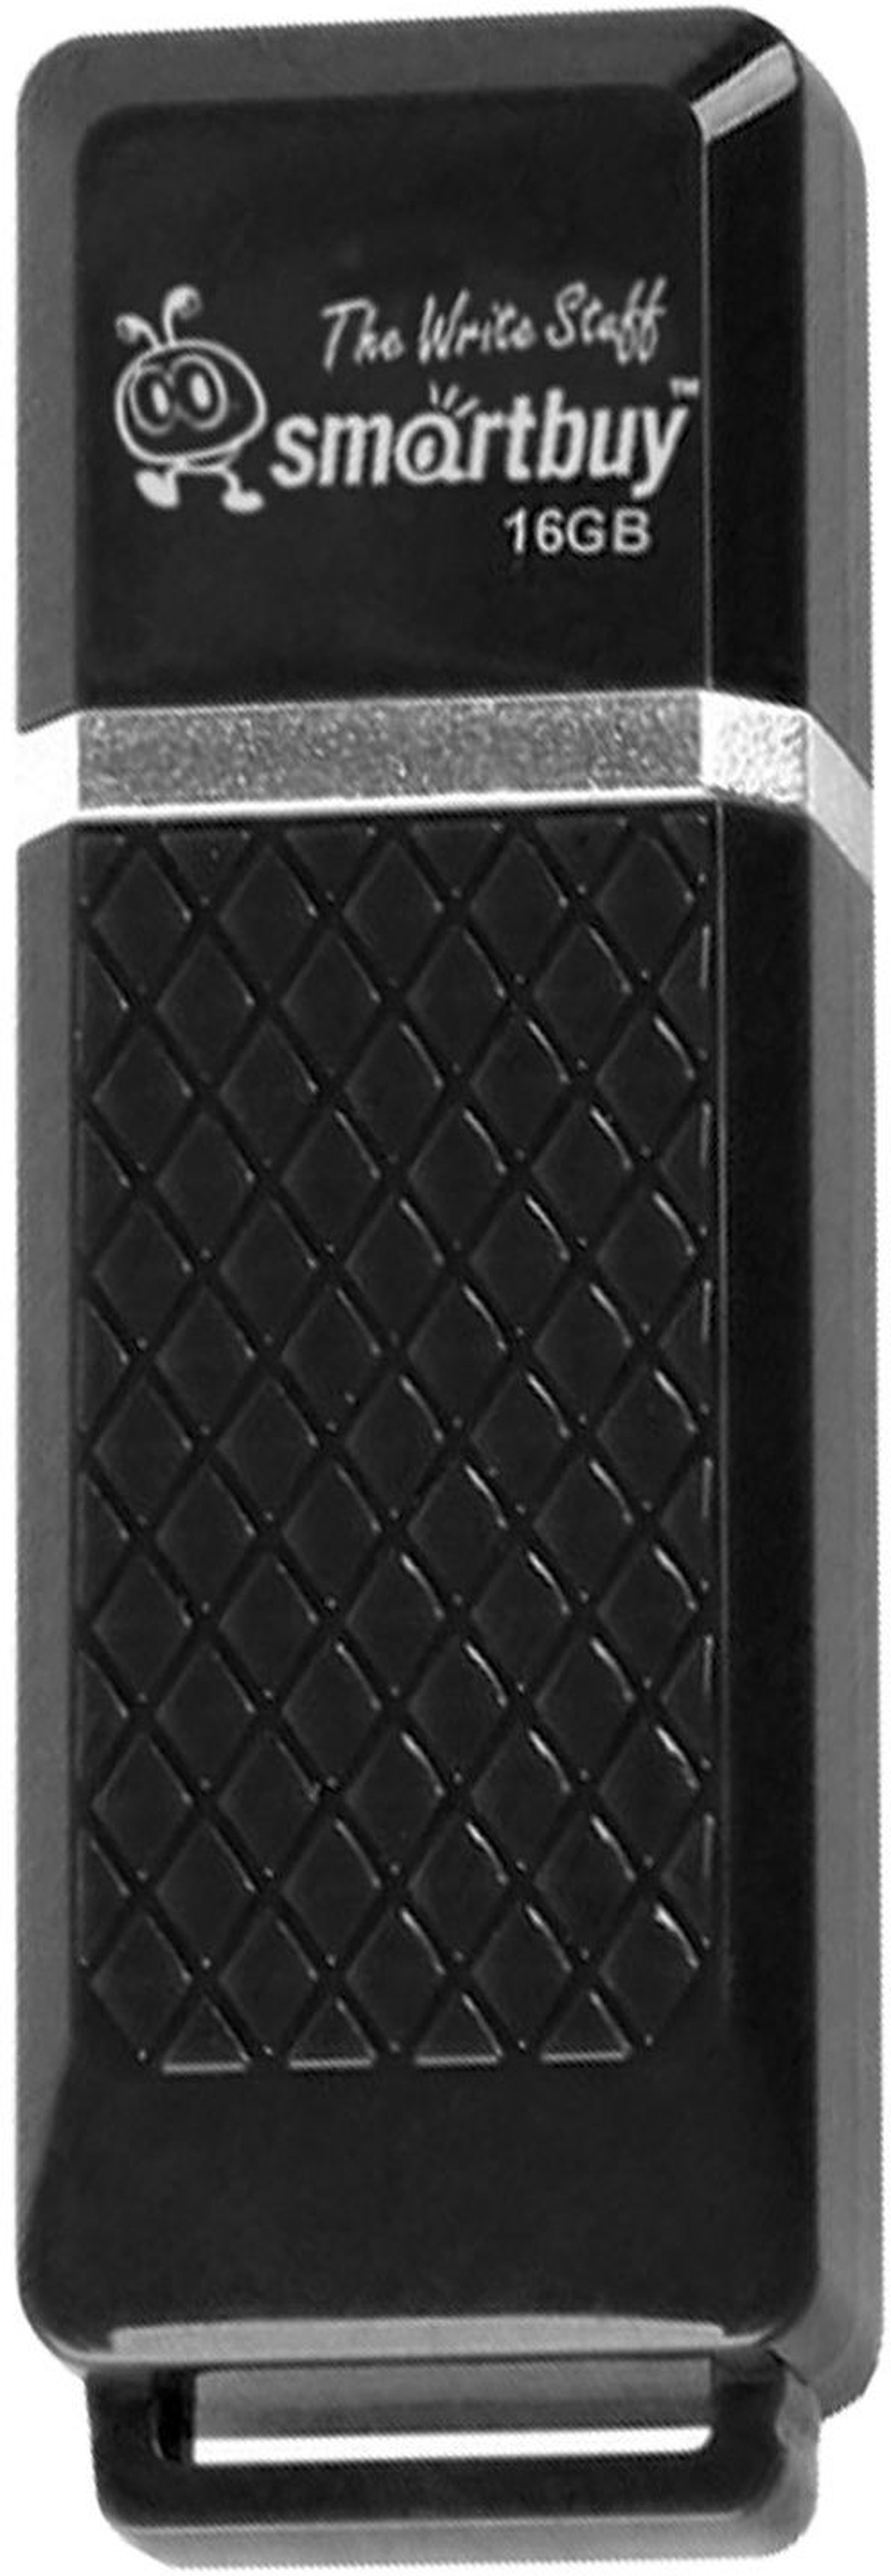 Флеш-накопитель Smartbuy Quartz USB 2.0 16GB, черный фото